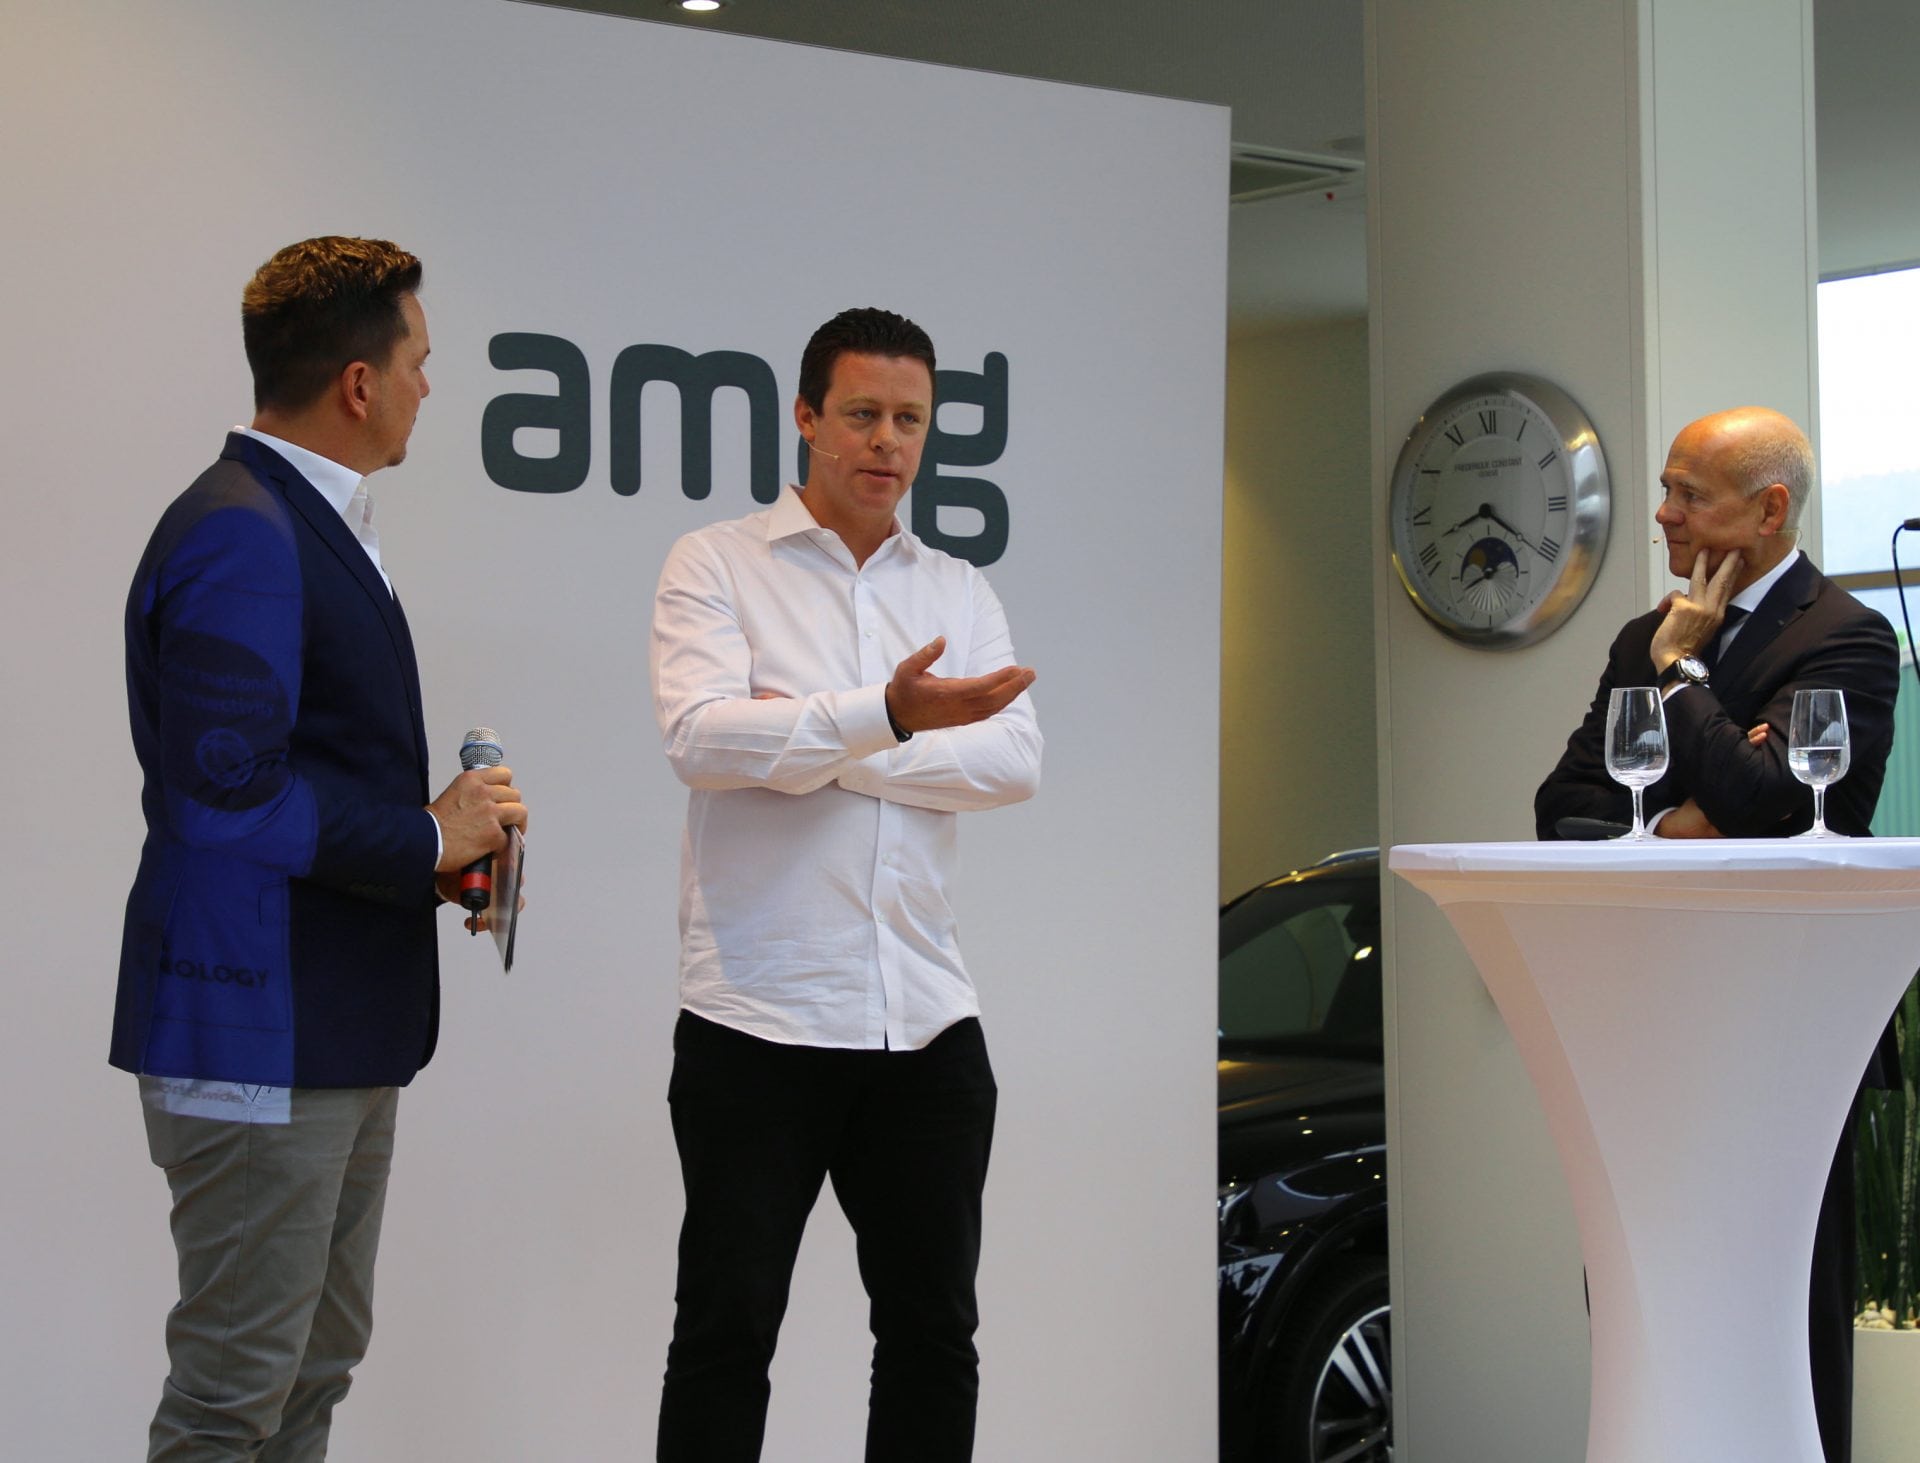 Morten Hannesbo, CEO d’AMAG (à droite) en conversation avec Nicolas Bürer (au centre).